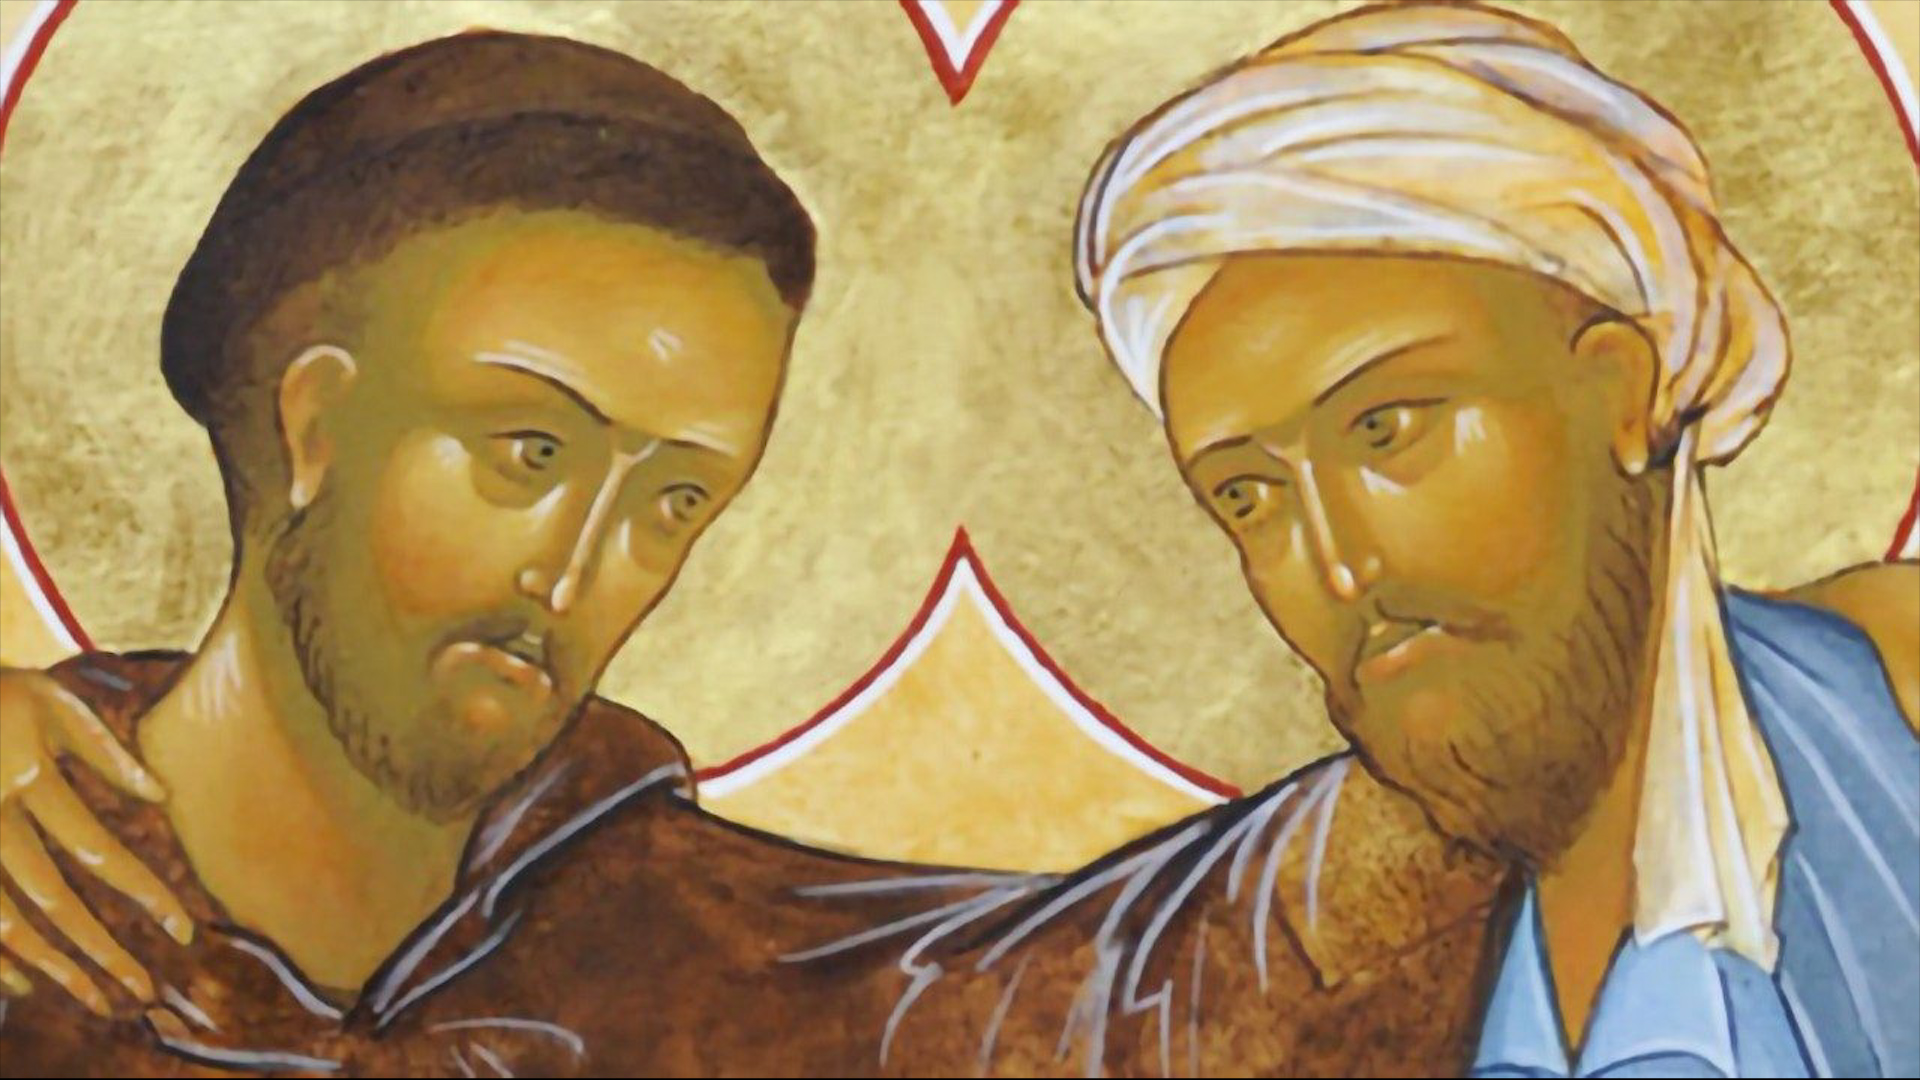 Călugărul creștin Francisc și sultanul musulman Al-Malik